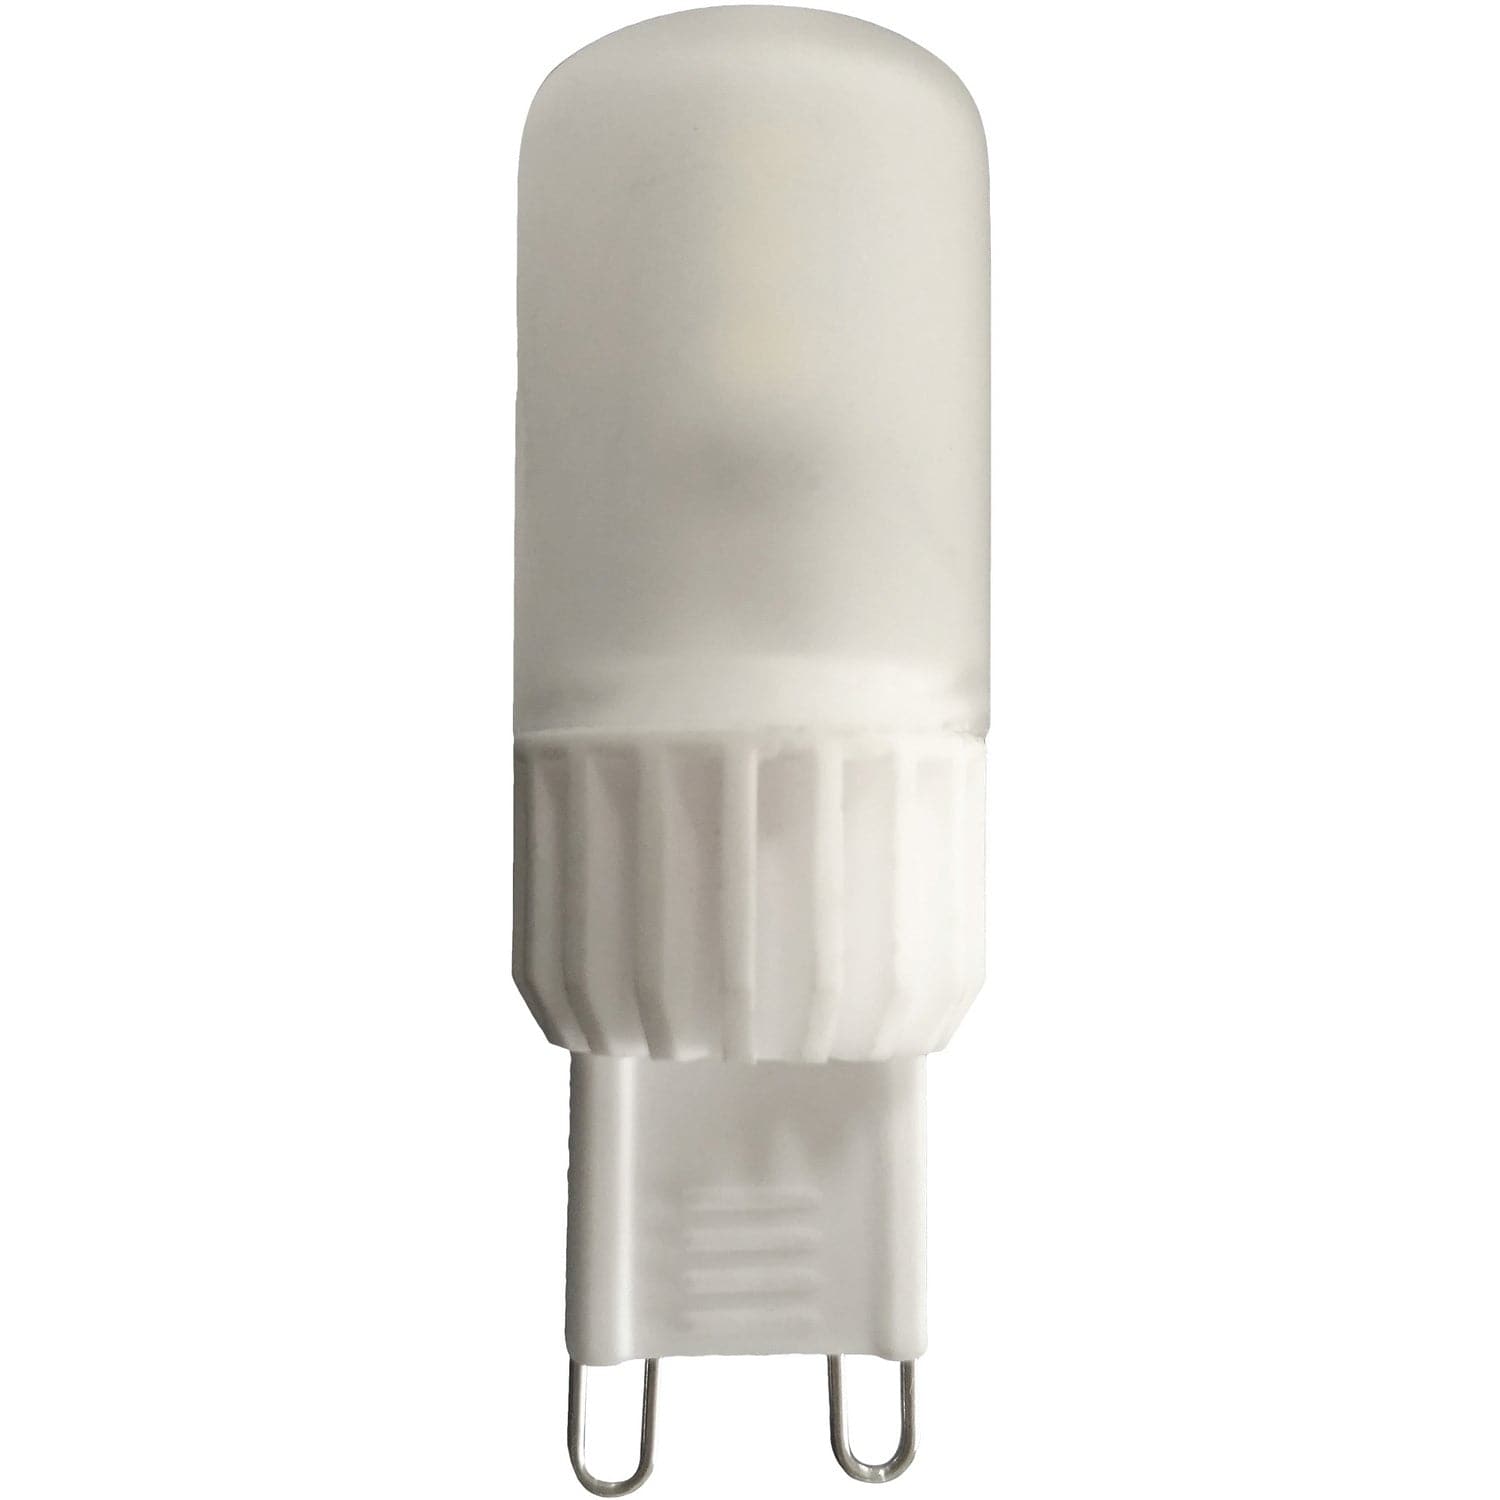 Renwil - LB022-3 - Bulbs - Bi-Pin